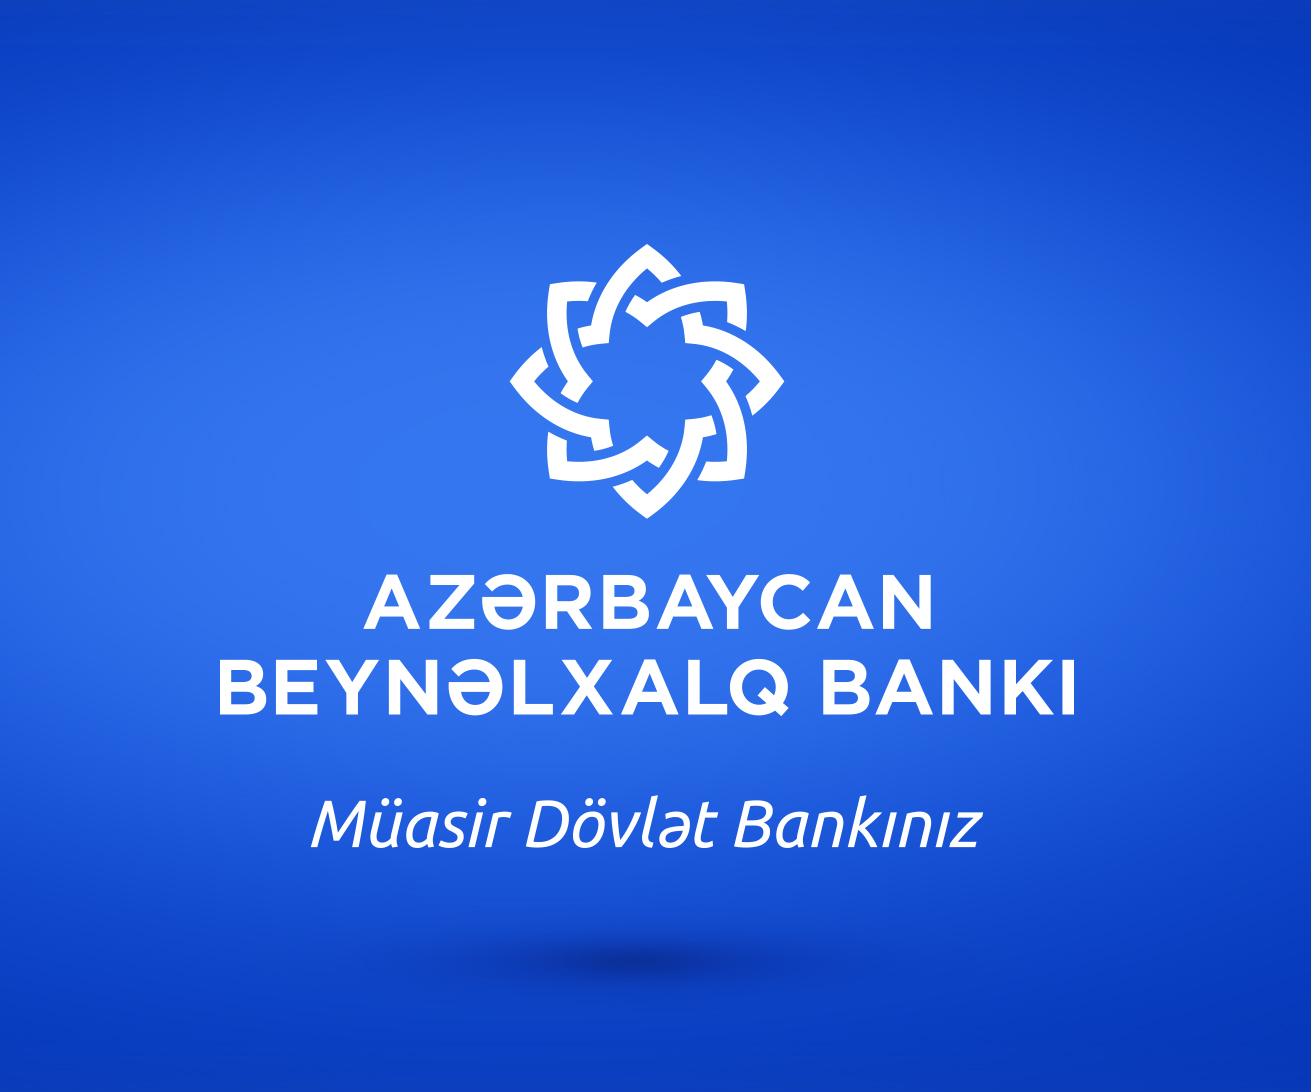 Azərbaycan Beynəlxalq Bankından rəqəmsal xidmətlərə dair çağırış